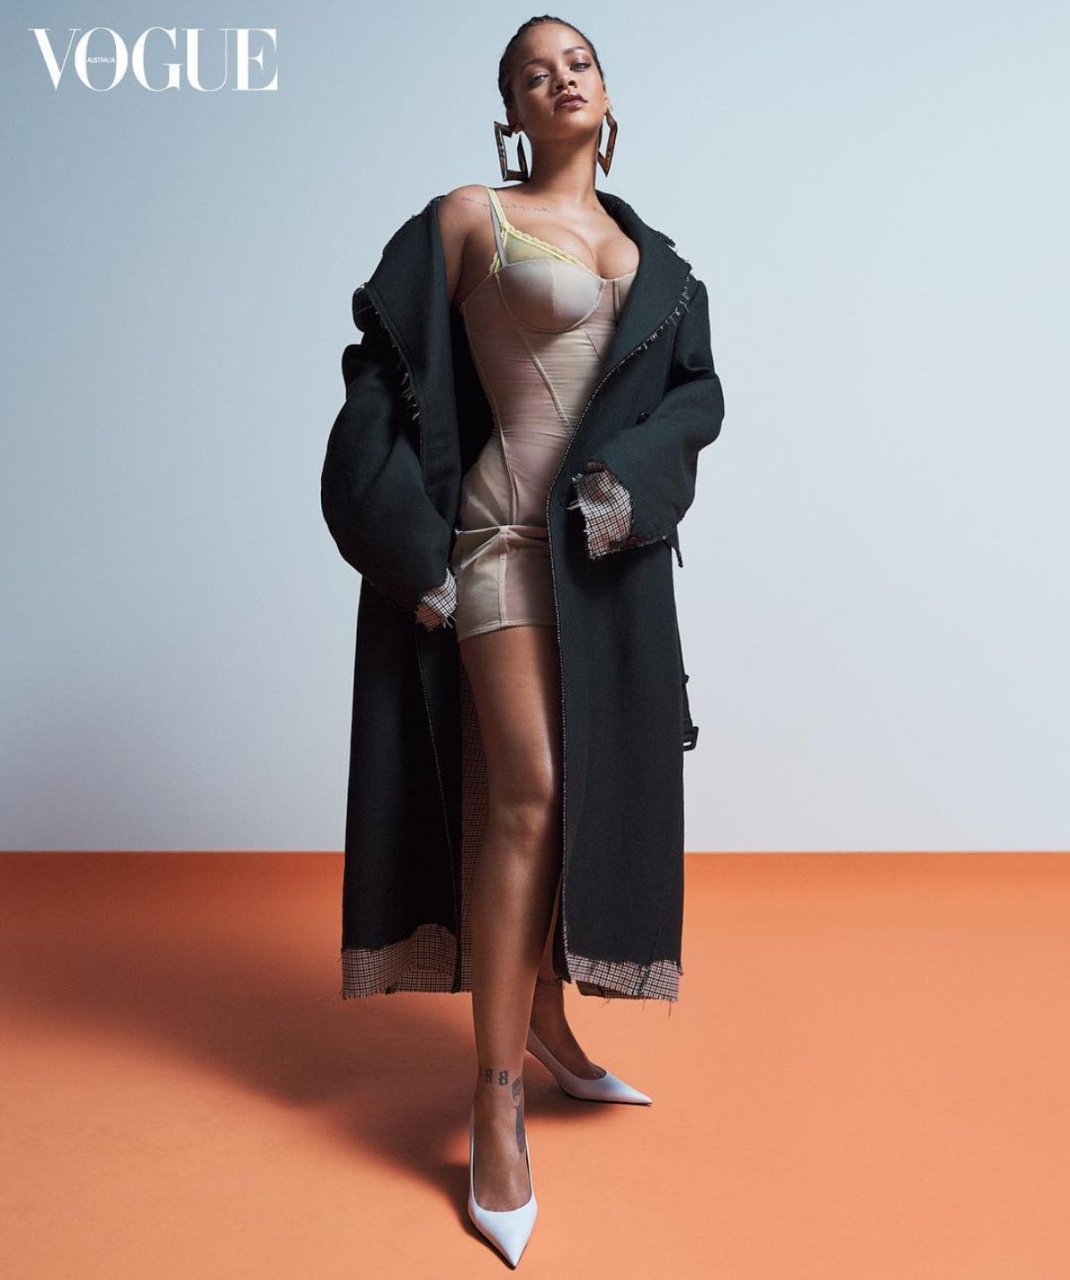 Rihanna Sexy (19 Photos)